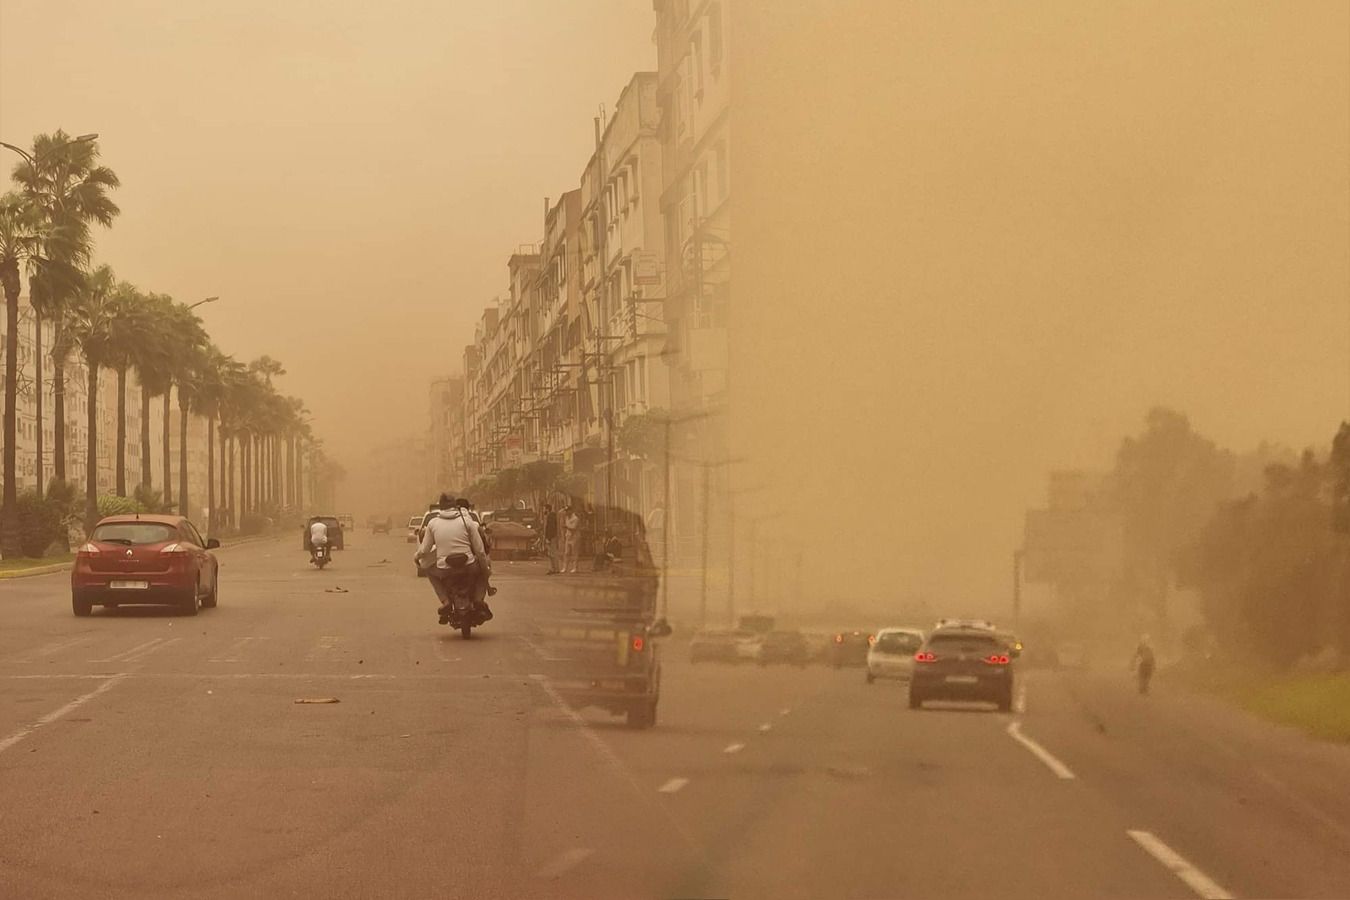 رياح قوية مع تناثر غبار يوم غد الاثنين بهذه المناطق المغربية